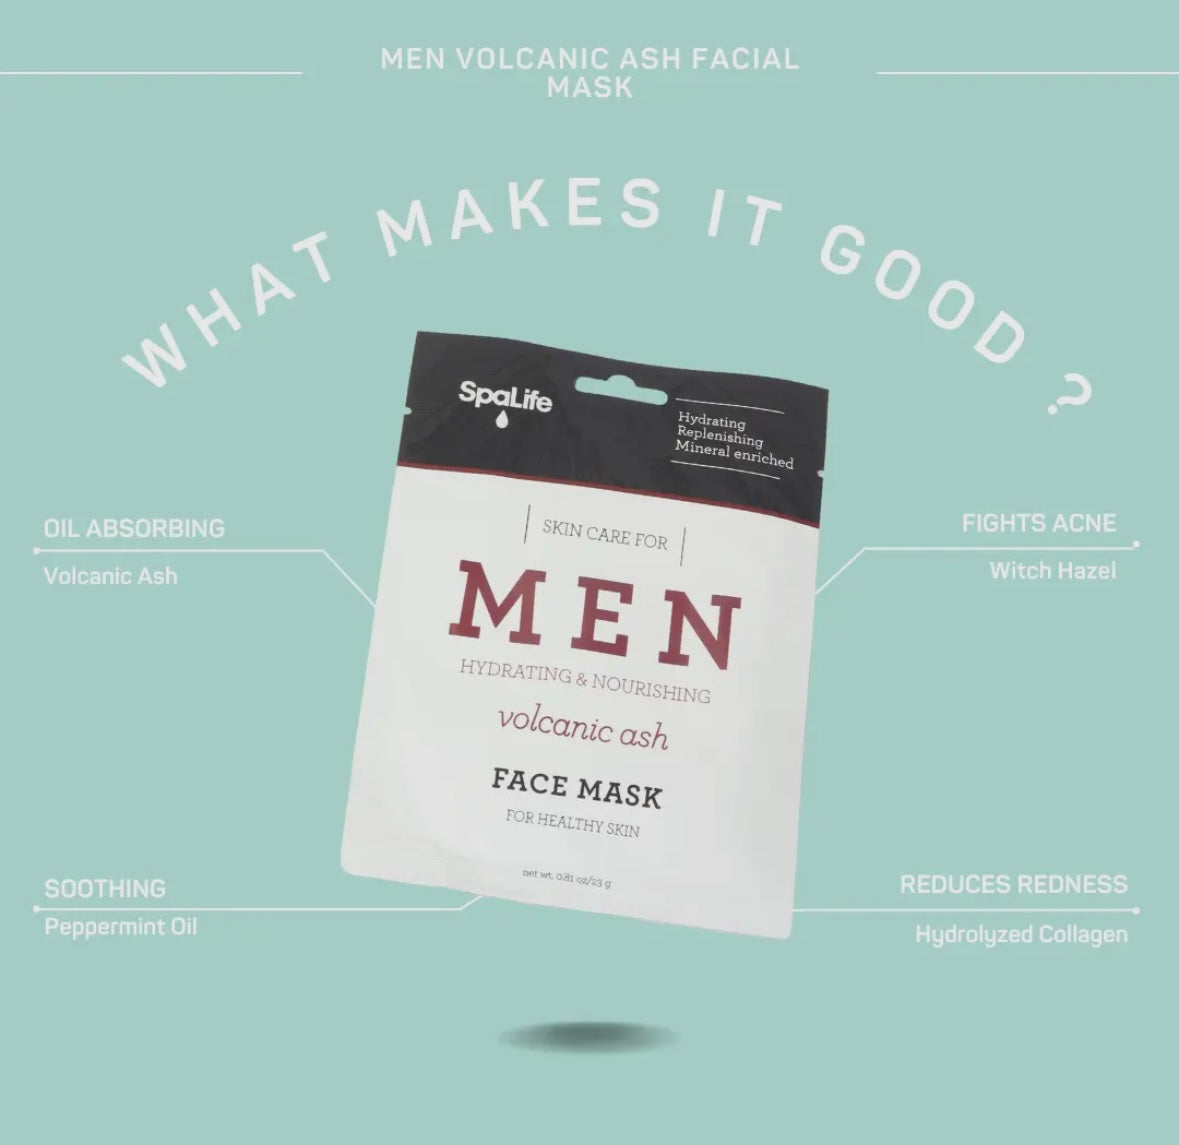 Men's Volcanic Ash Facial Mask